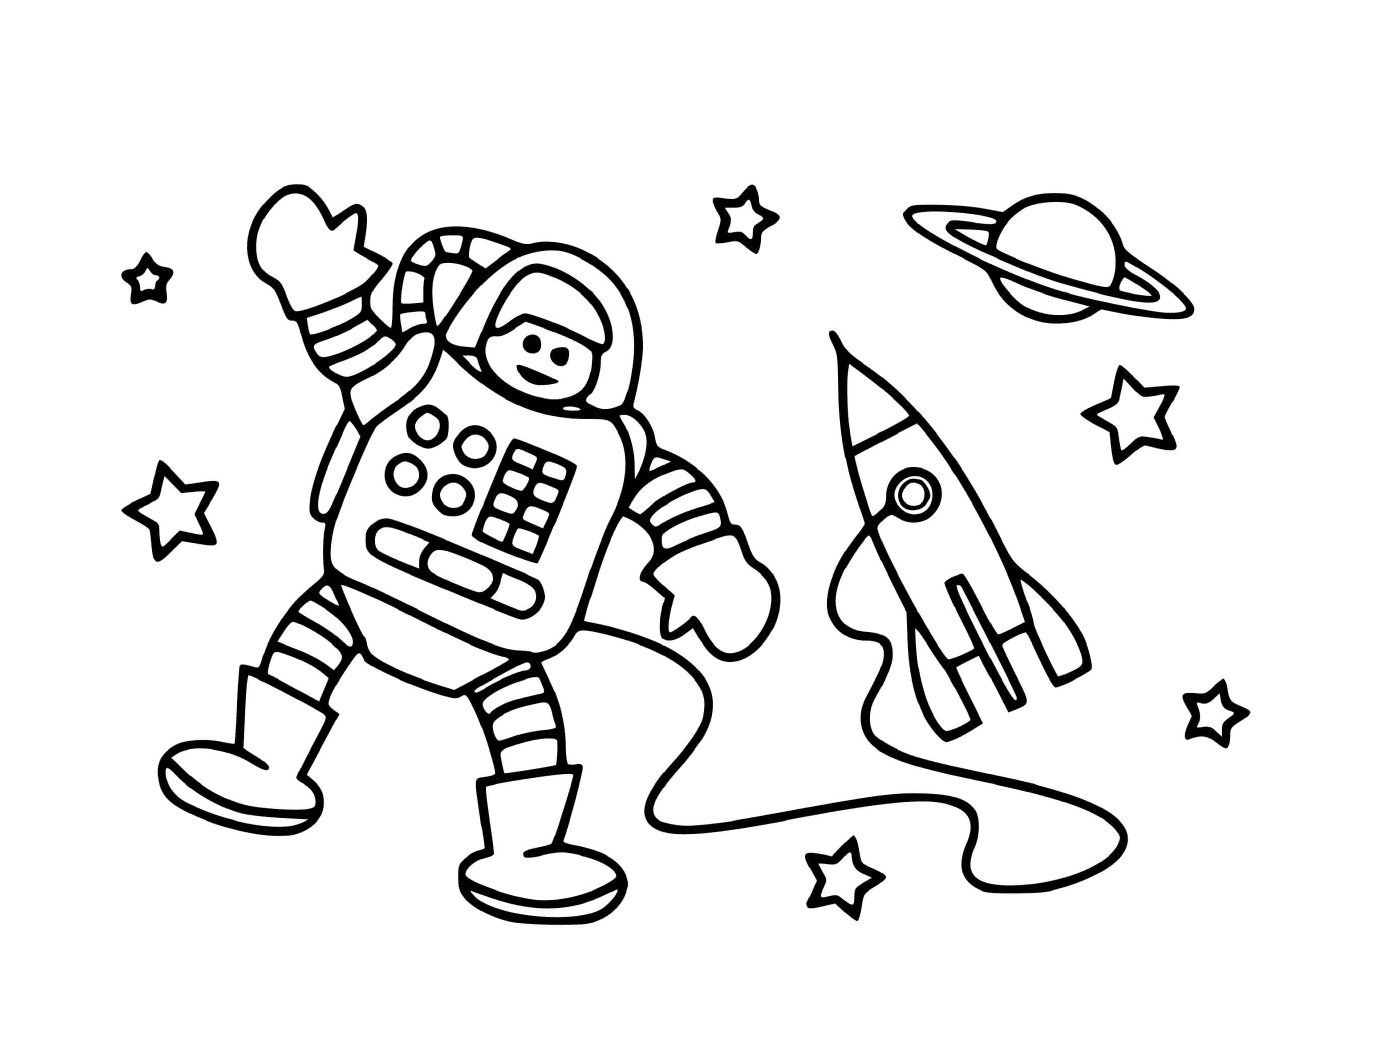  Astronauta e foguete espacial 